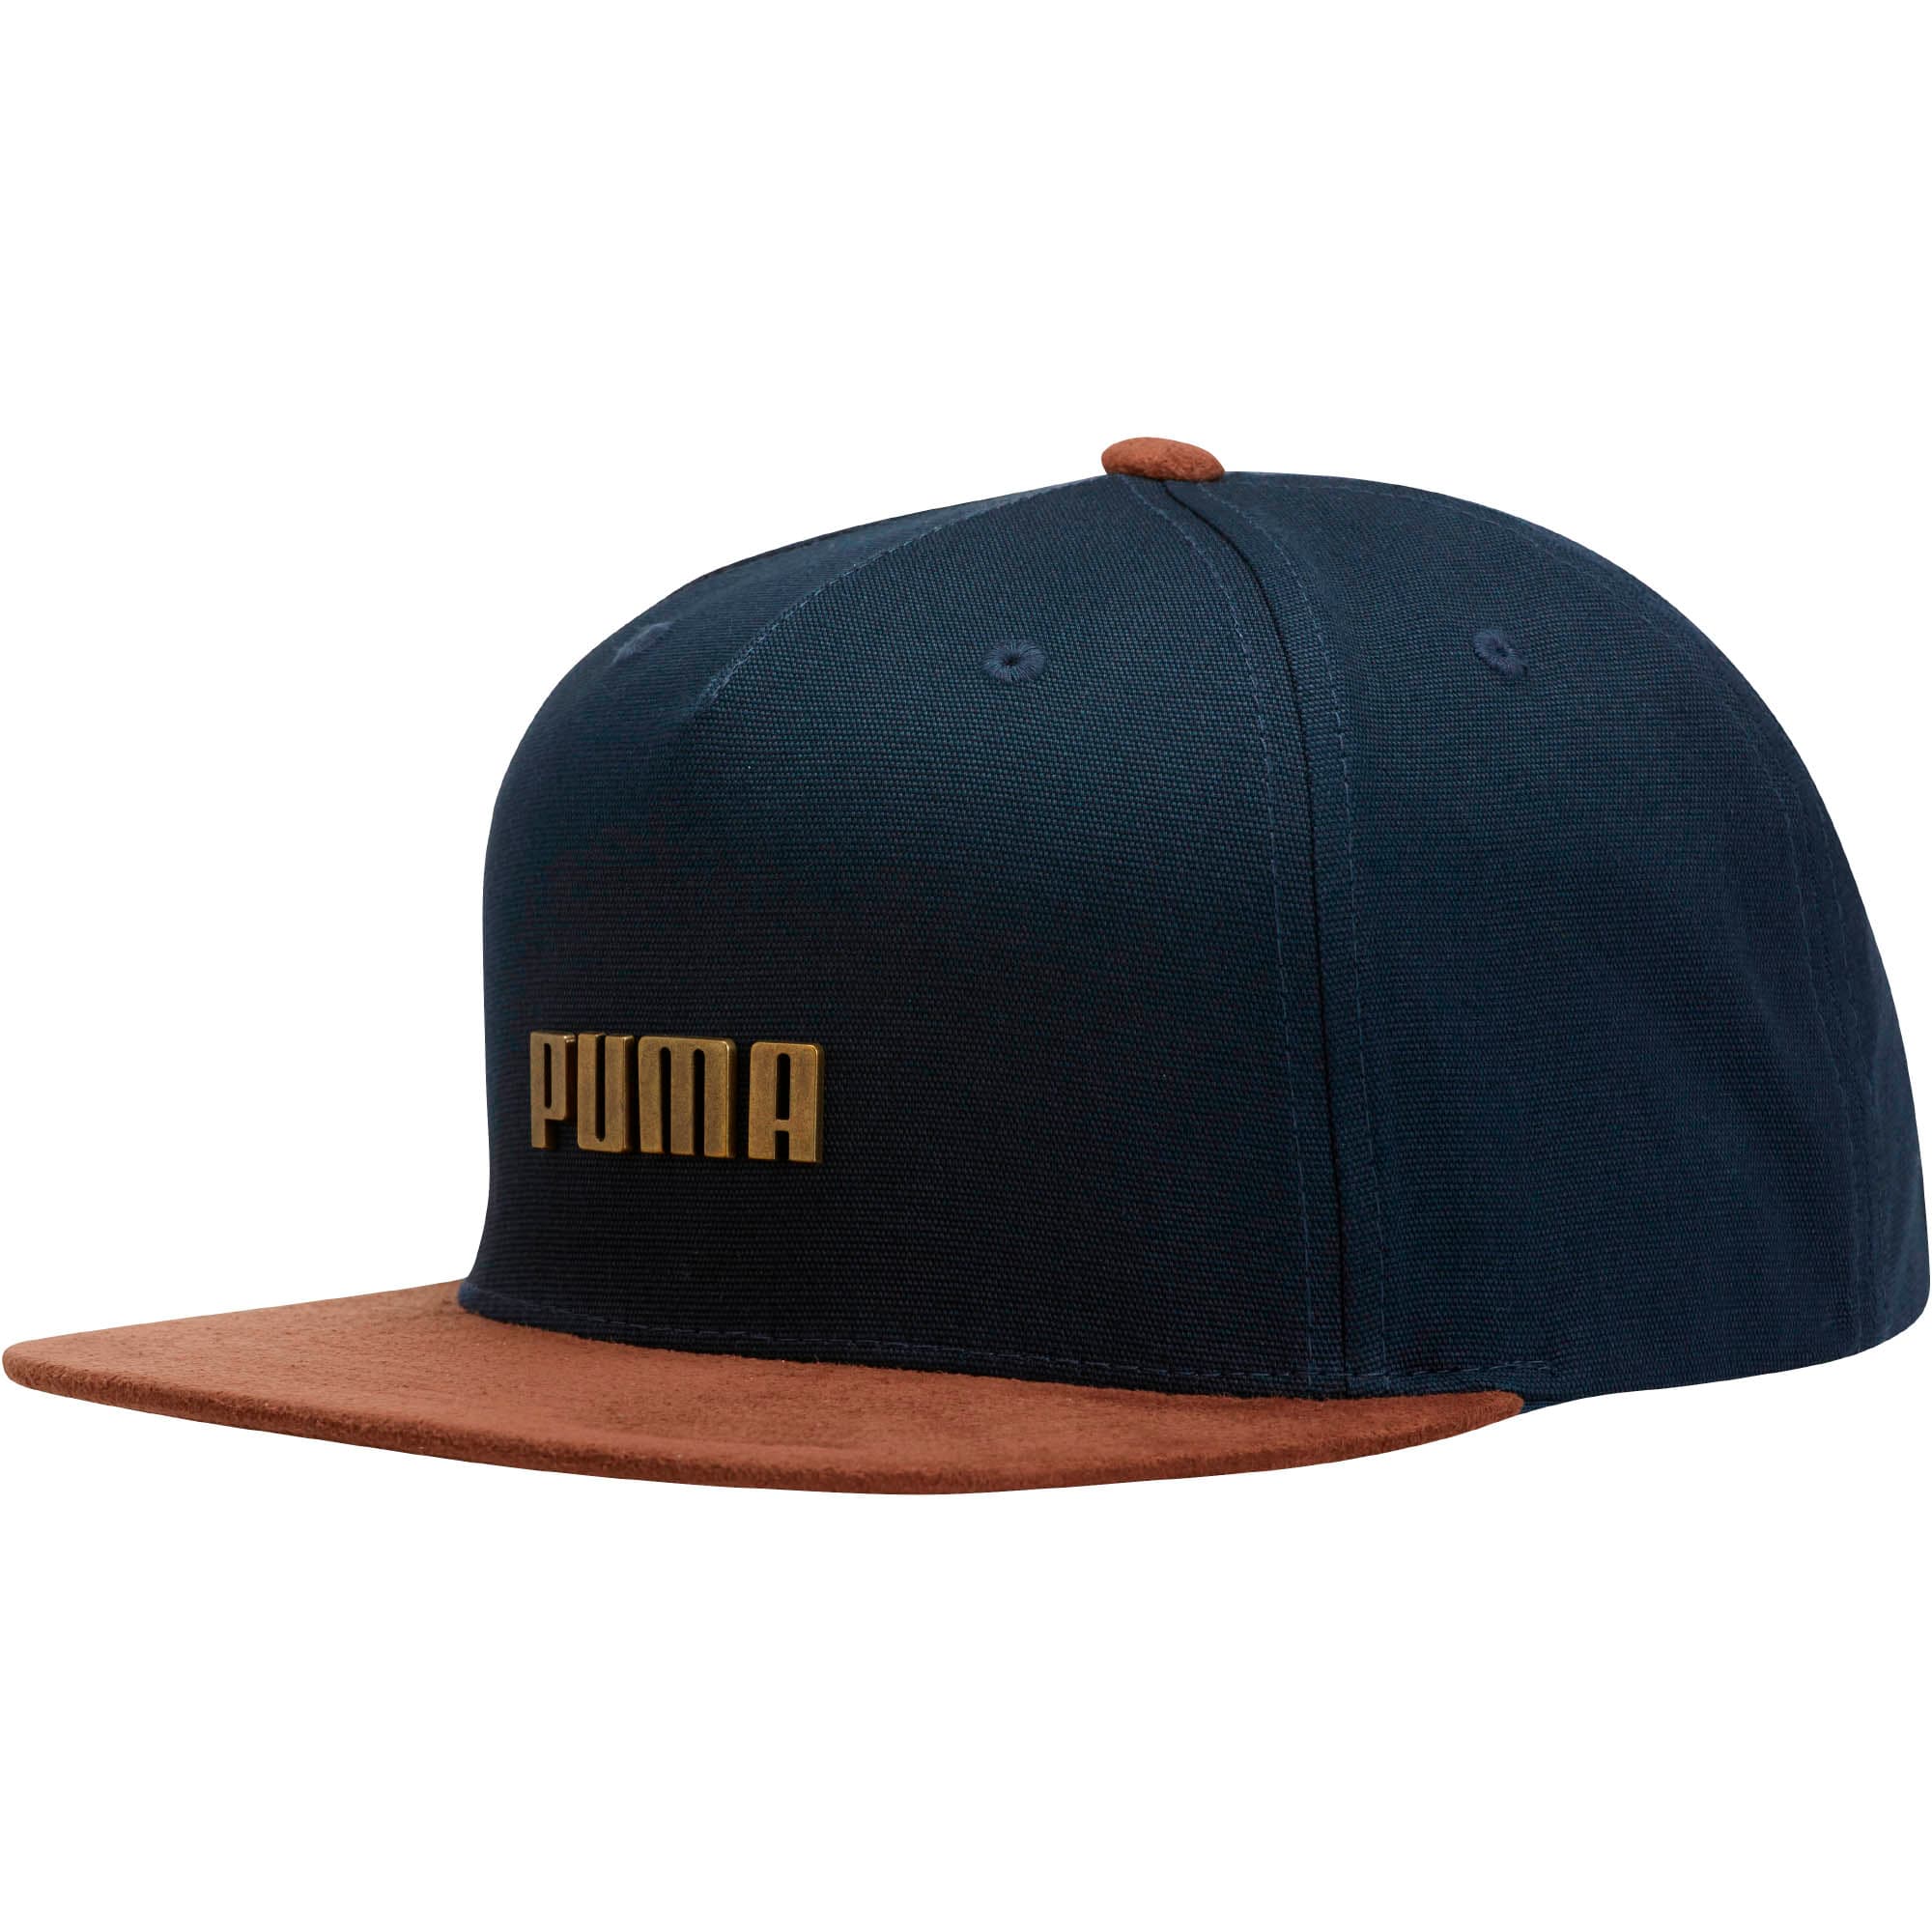 puma flat bill hat